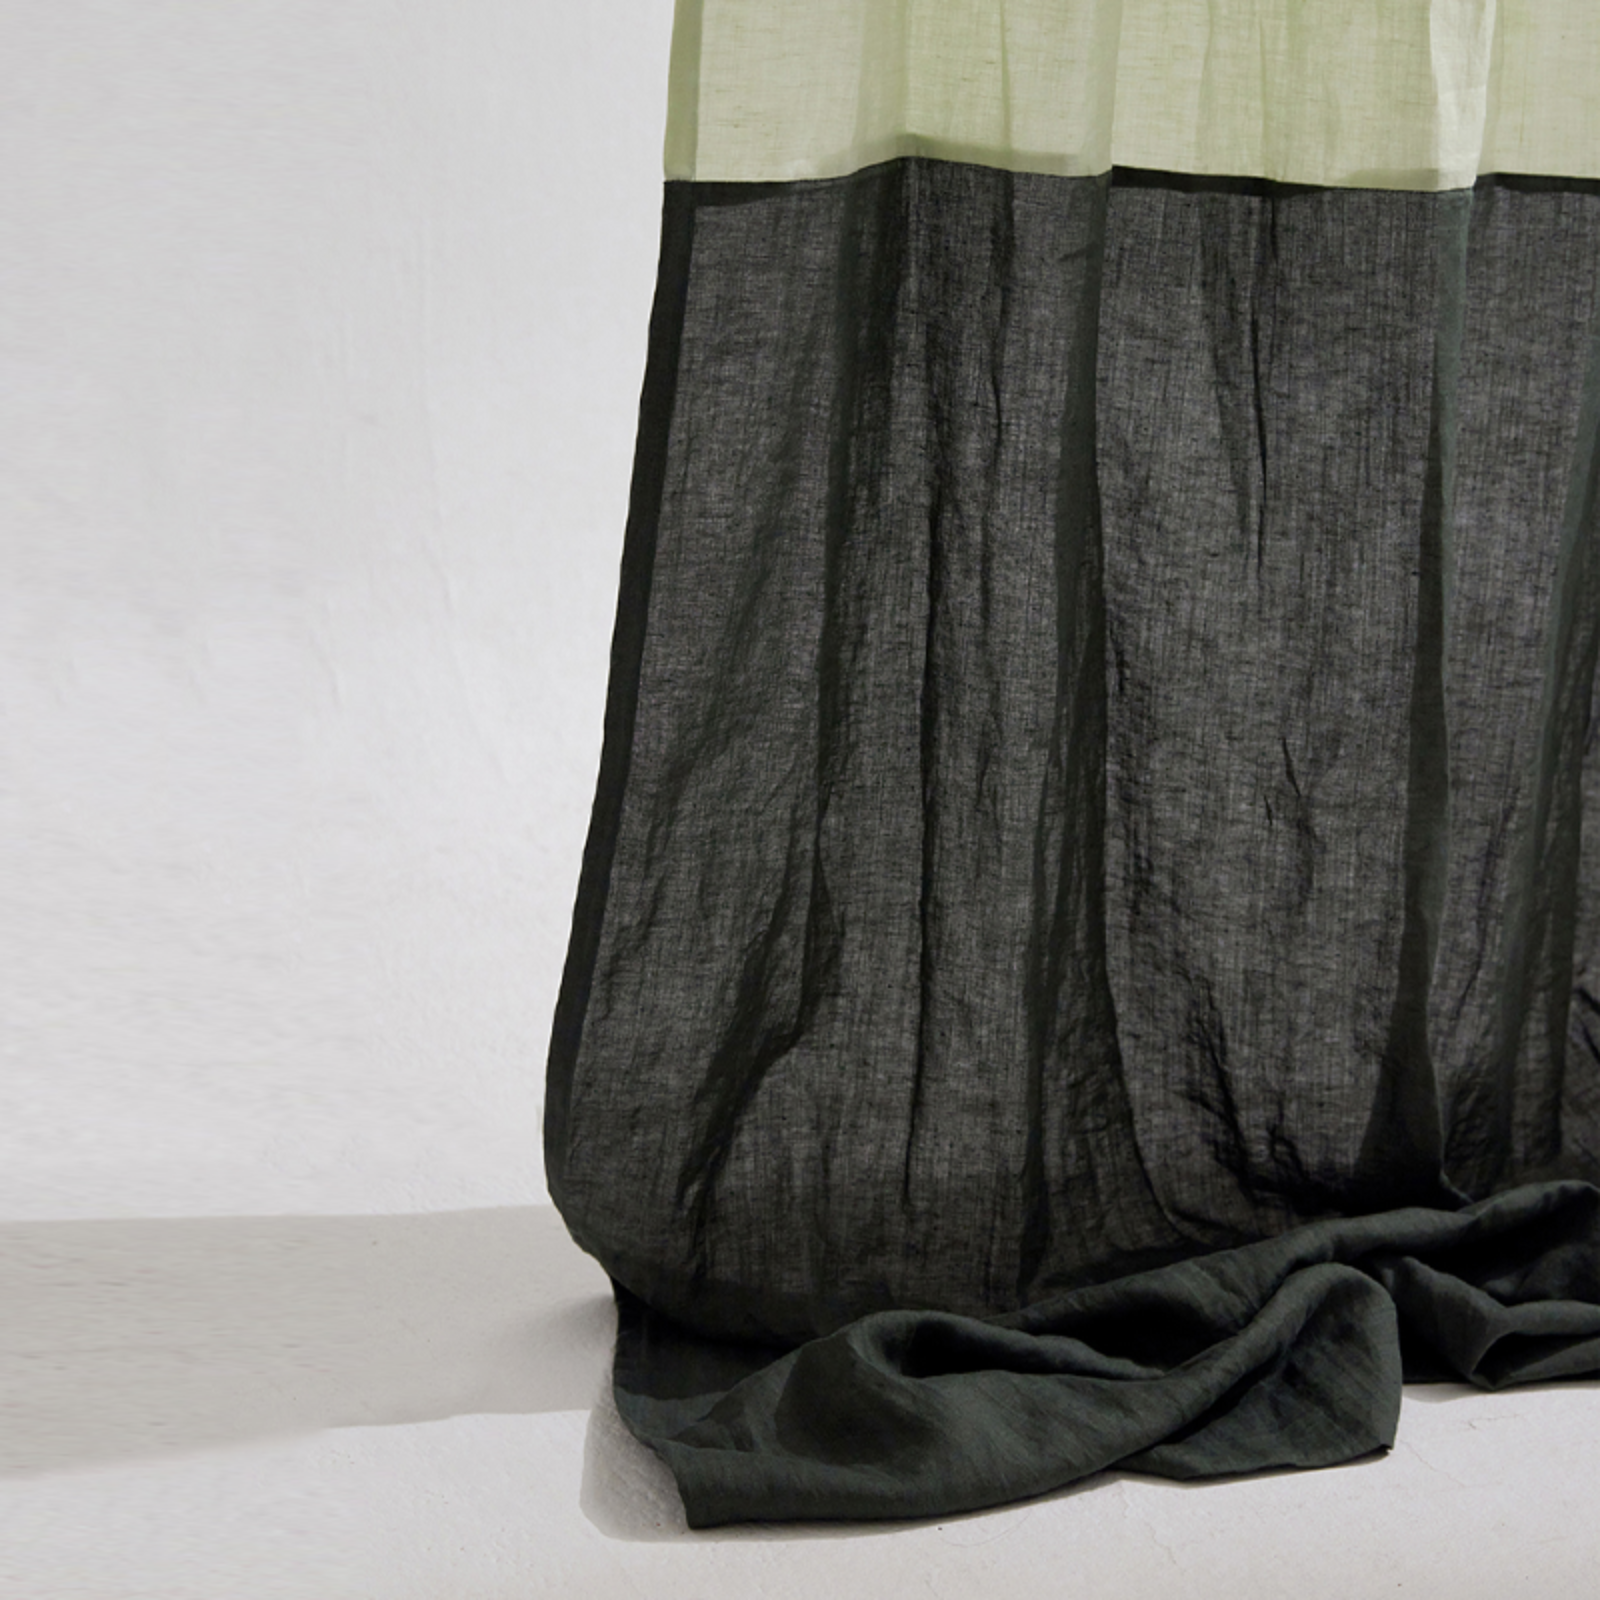 챕터원,[Spring fabric collection, 10%] 프리미엄 리넨 투톤 한폭 커튼 - 모스그린 &amp; 파스텔그린